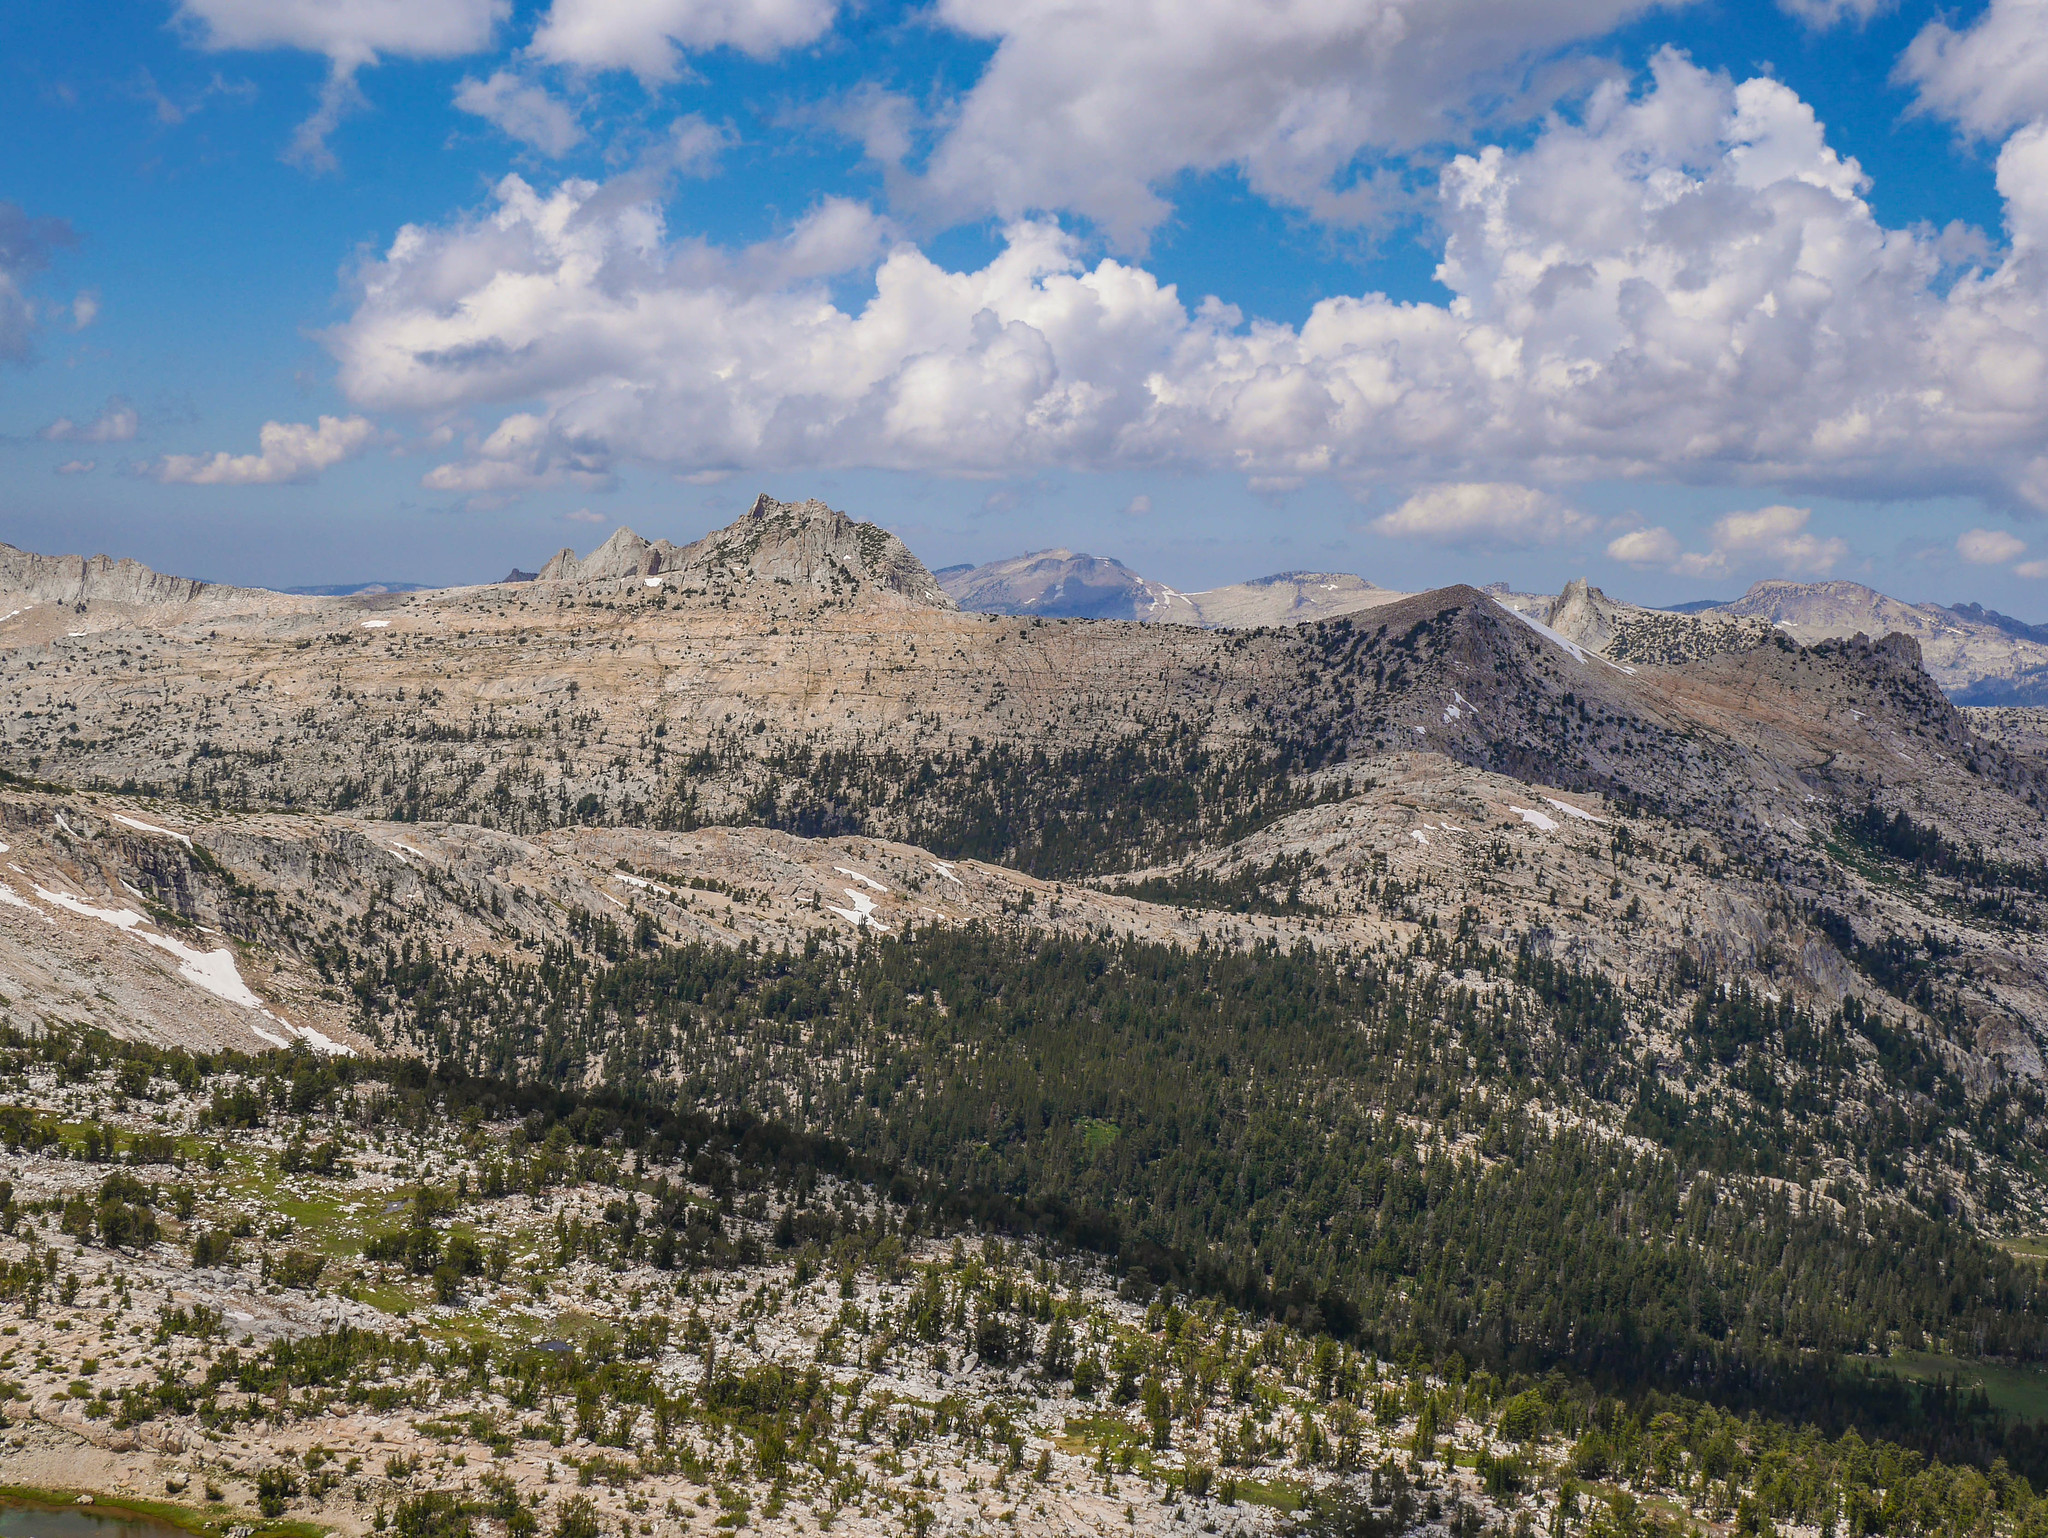 View from Johnson Peak